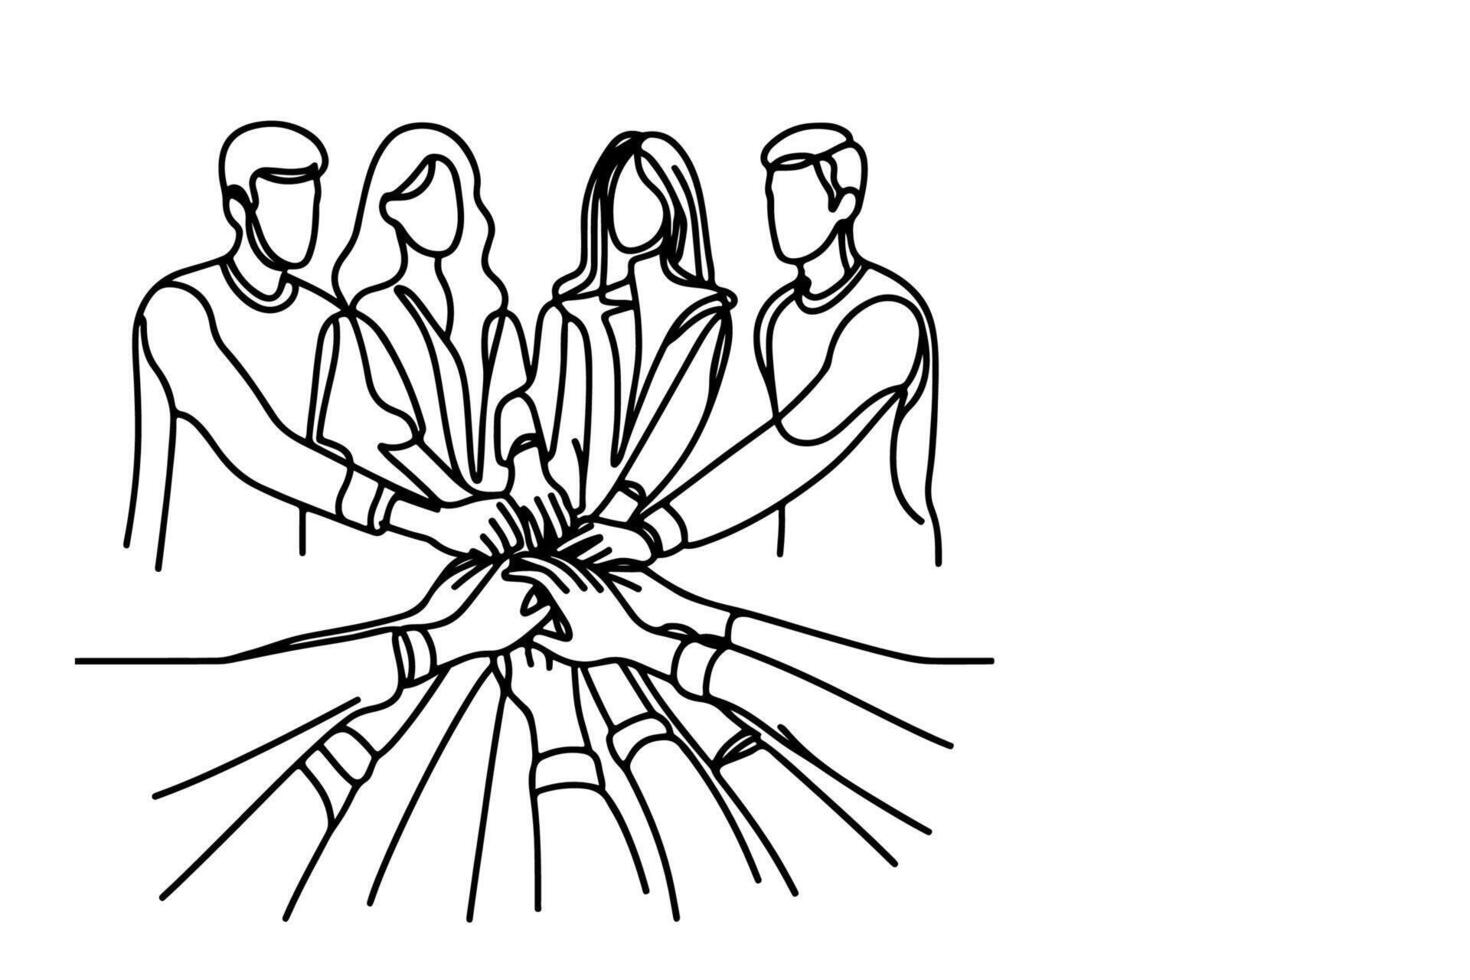 kontinuerlig ett enda svart linje teckning lagarbete grupp av vänner sätta deras händer tillsammans illustration isolerat på vit bakgrund vektor